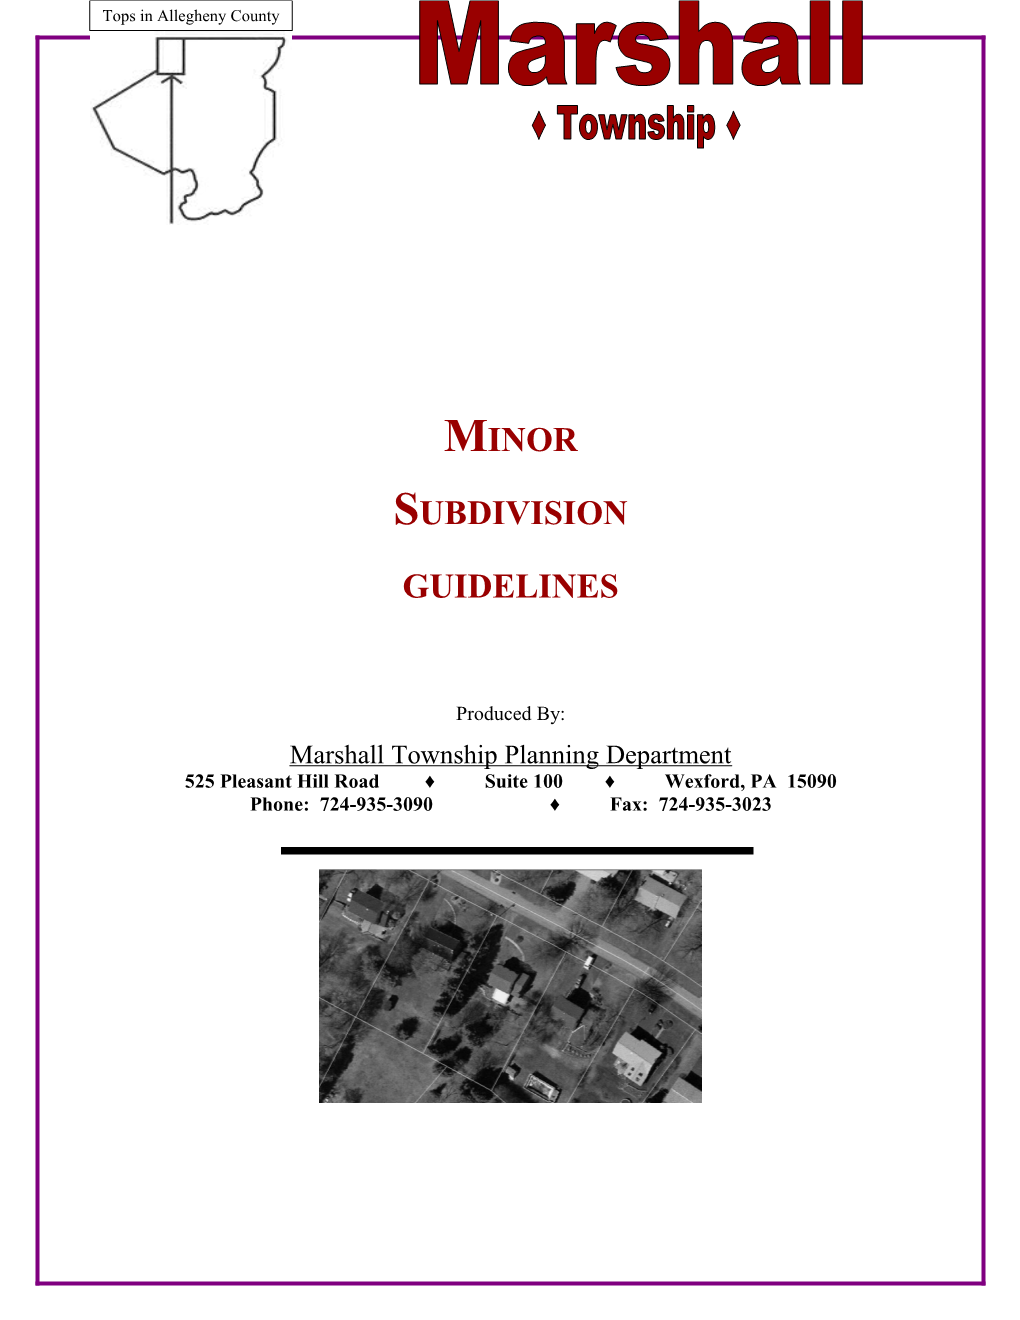 Subdivision Process Guide